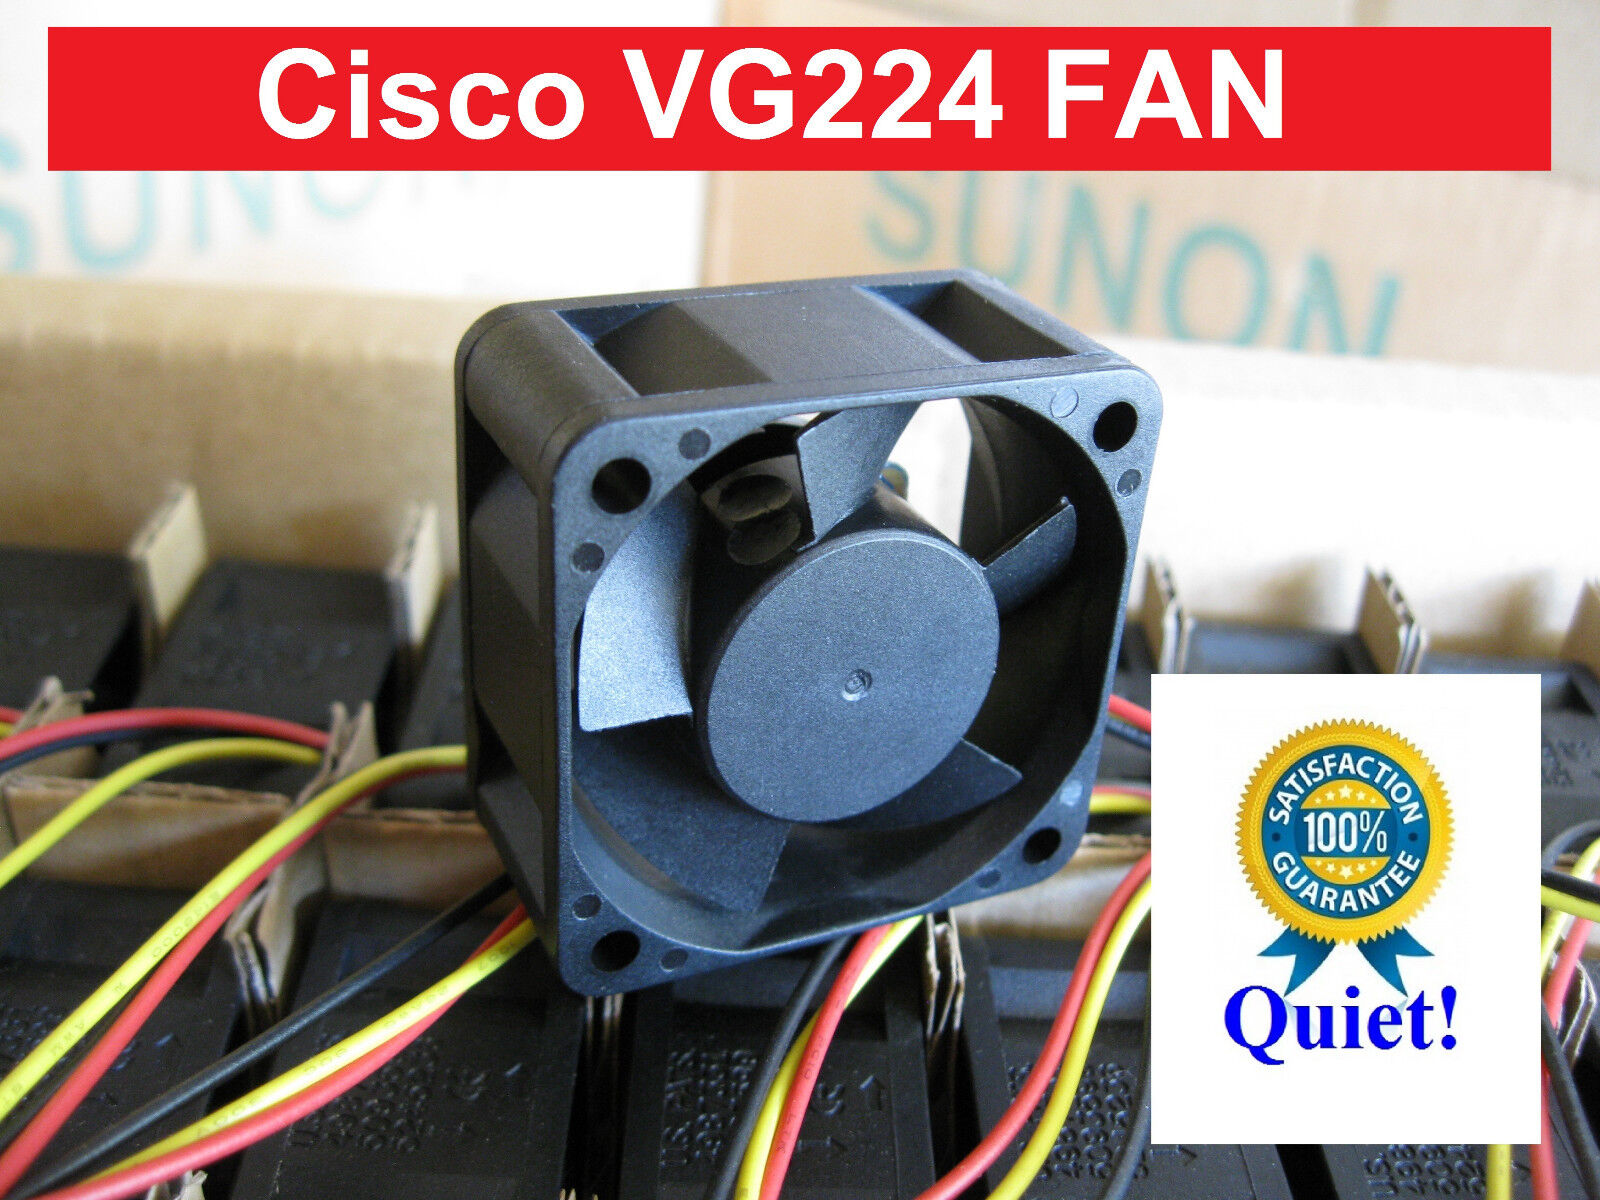 1x Quiet Replacement Fan (18dBA noise) for Cisco VG224 Voice Gateway